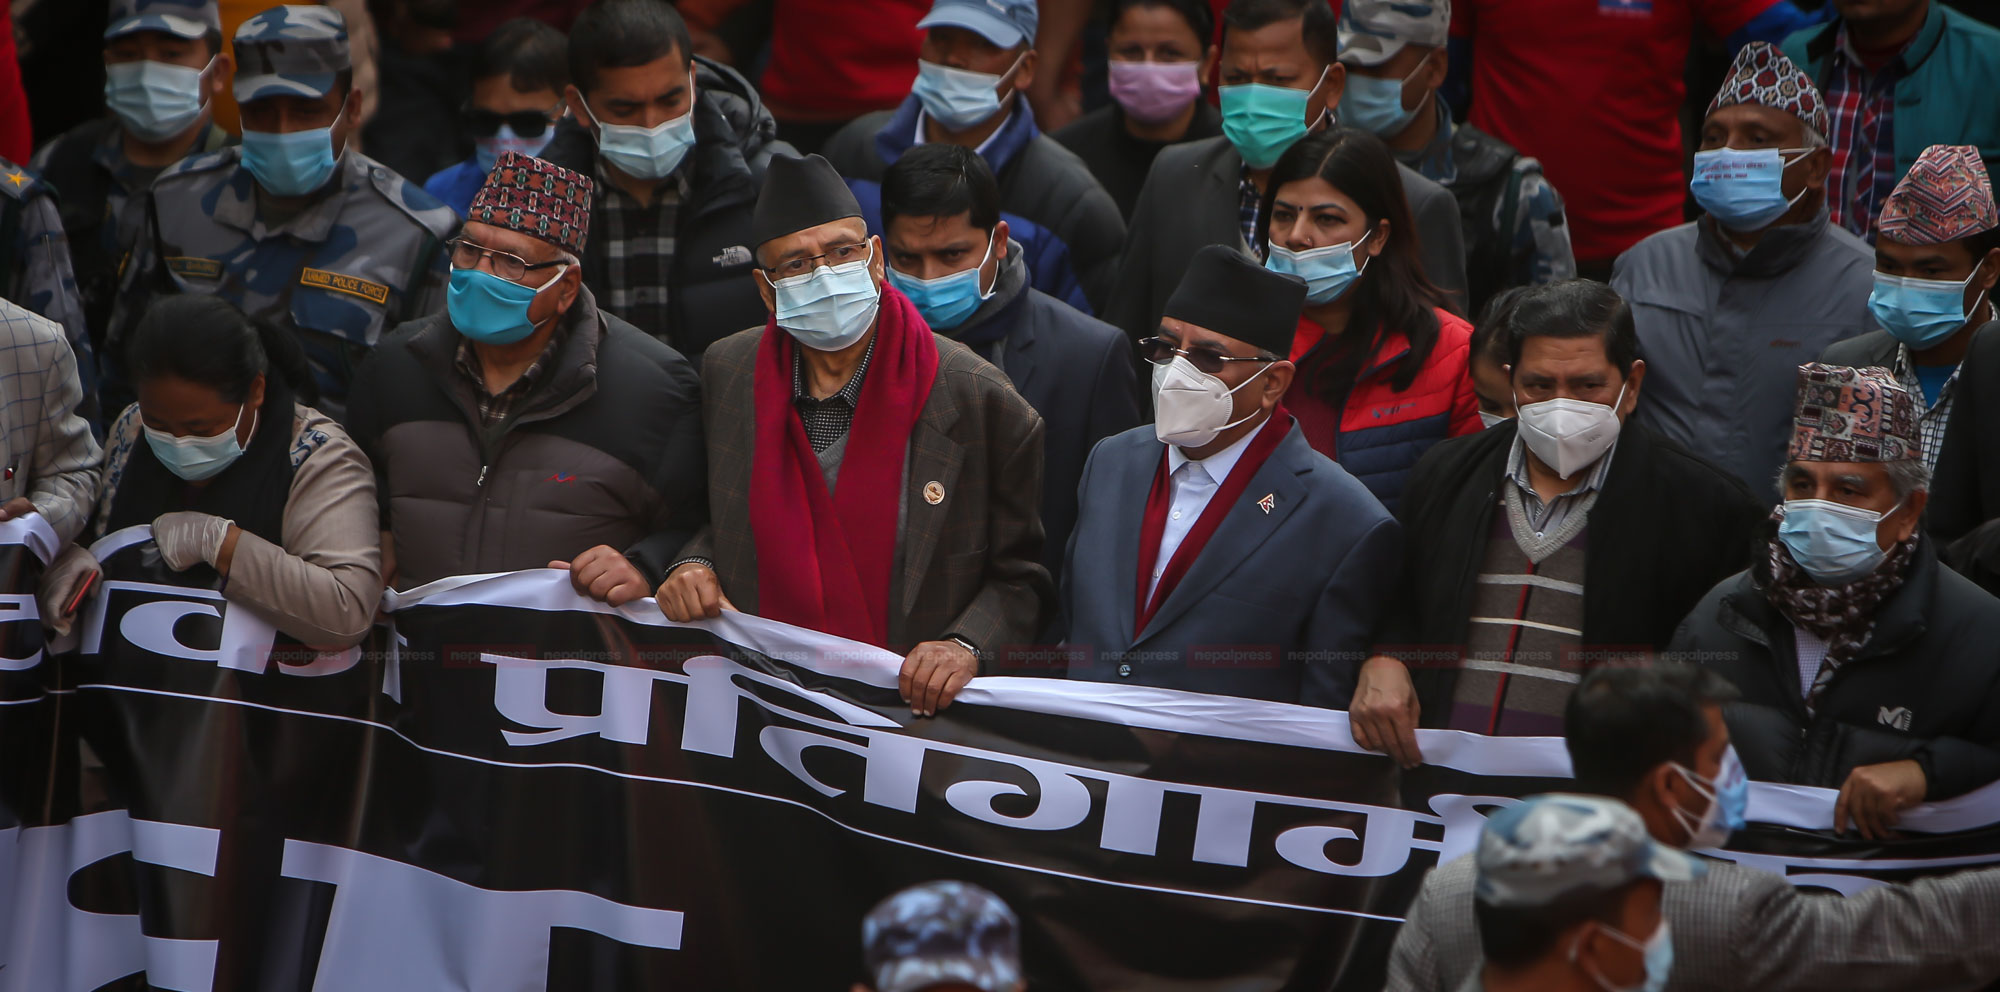 भिडियो र तस्वीरमा हेर्नुहोस् प्रचण्ड–नेपाल पक्षको शक्ति प्रदर्शन